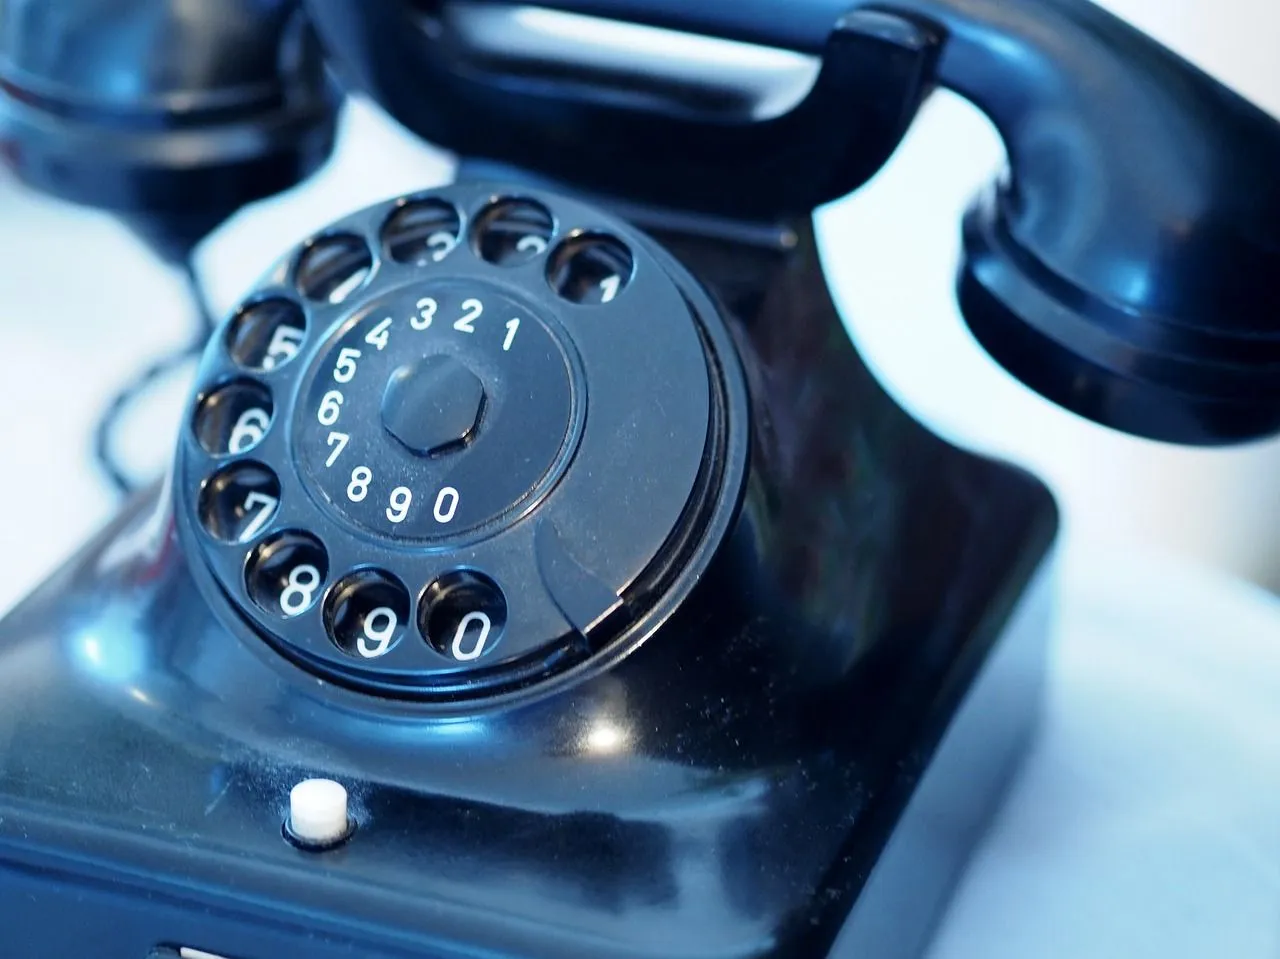 Guida pratica ai diritti dei consumatori nella telefonia: come evitare trappole e difendersi dalle pratiche ingiuste.